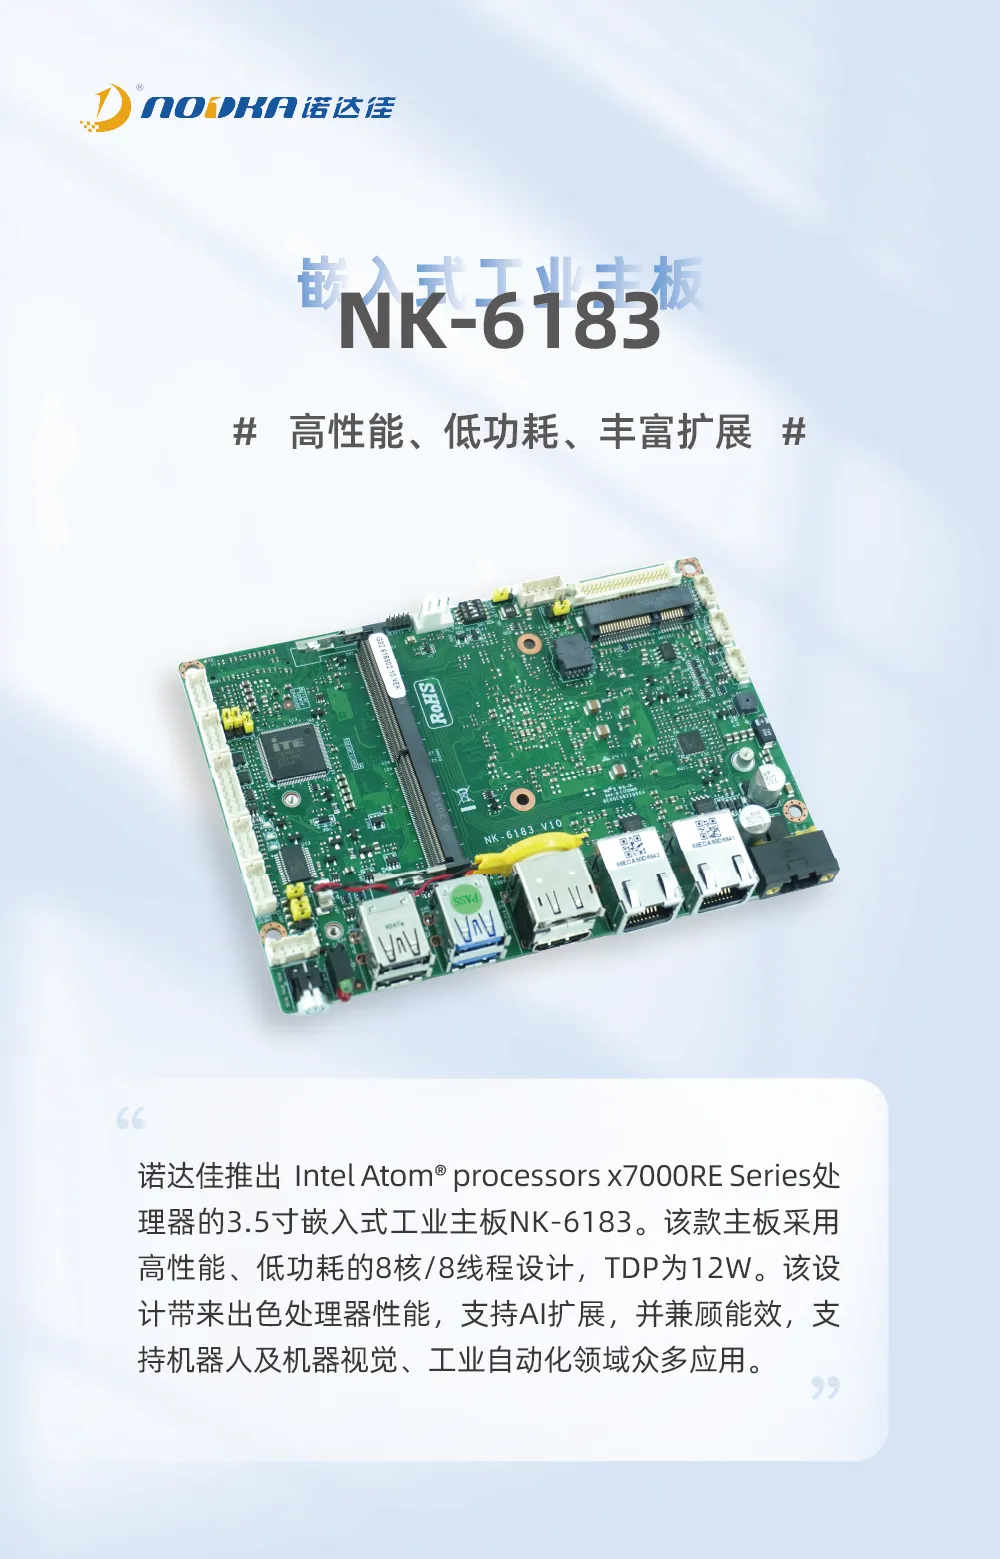  高性能3.5寸工业主板NK-6183，助力工业自动化丰富应用！